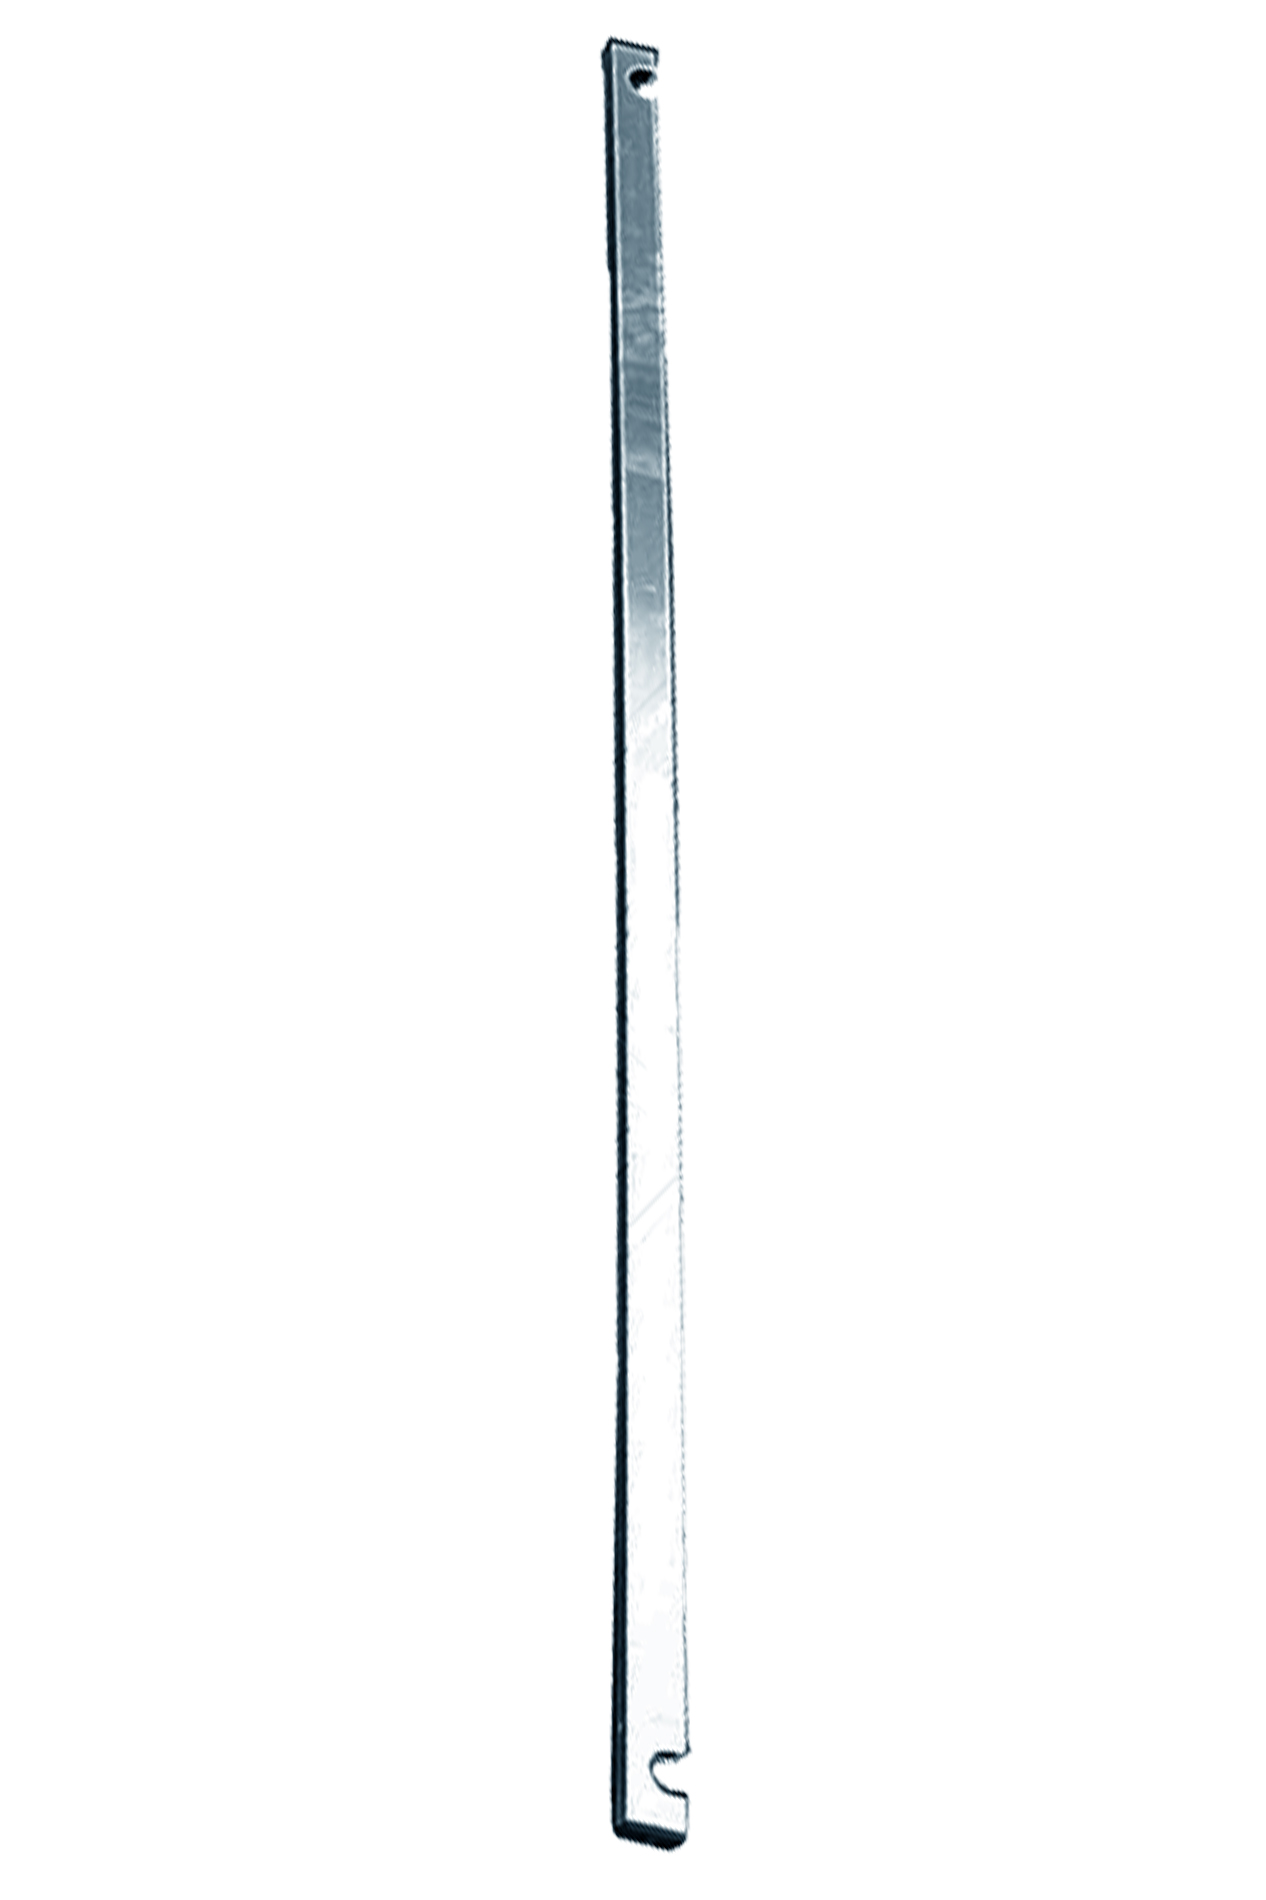 Дополнительное изображение Stabilo серии 1000 рабочая высота 7,2 м, размер площадки (2.5x0.75 м)